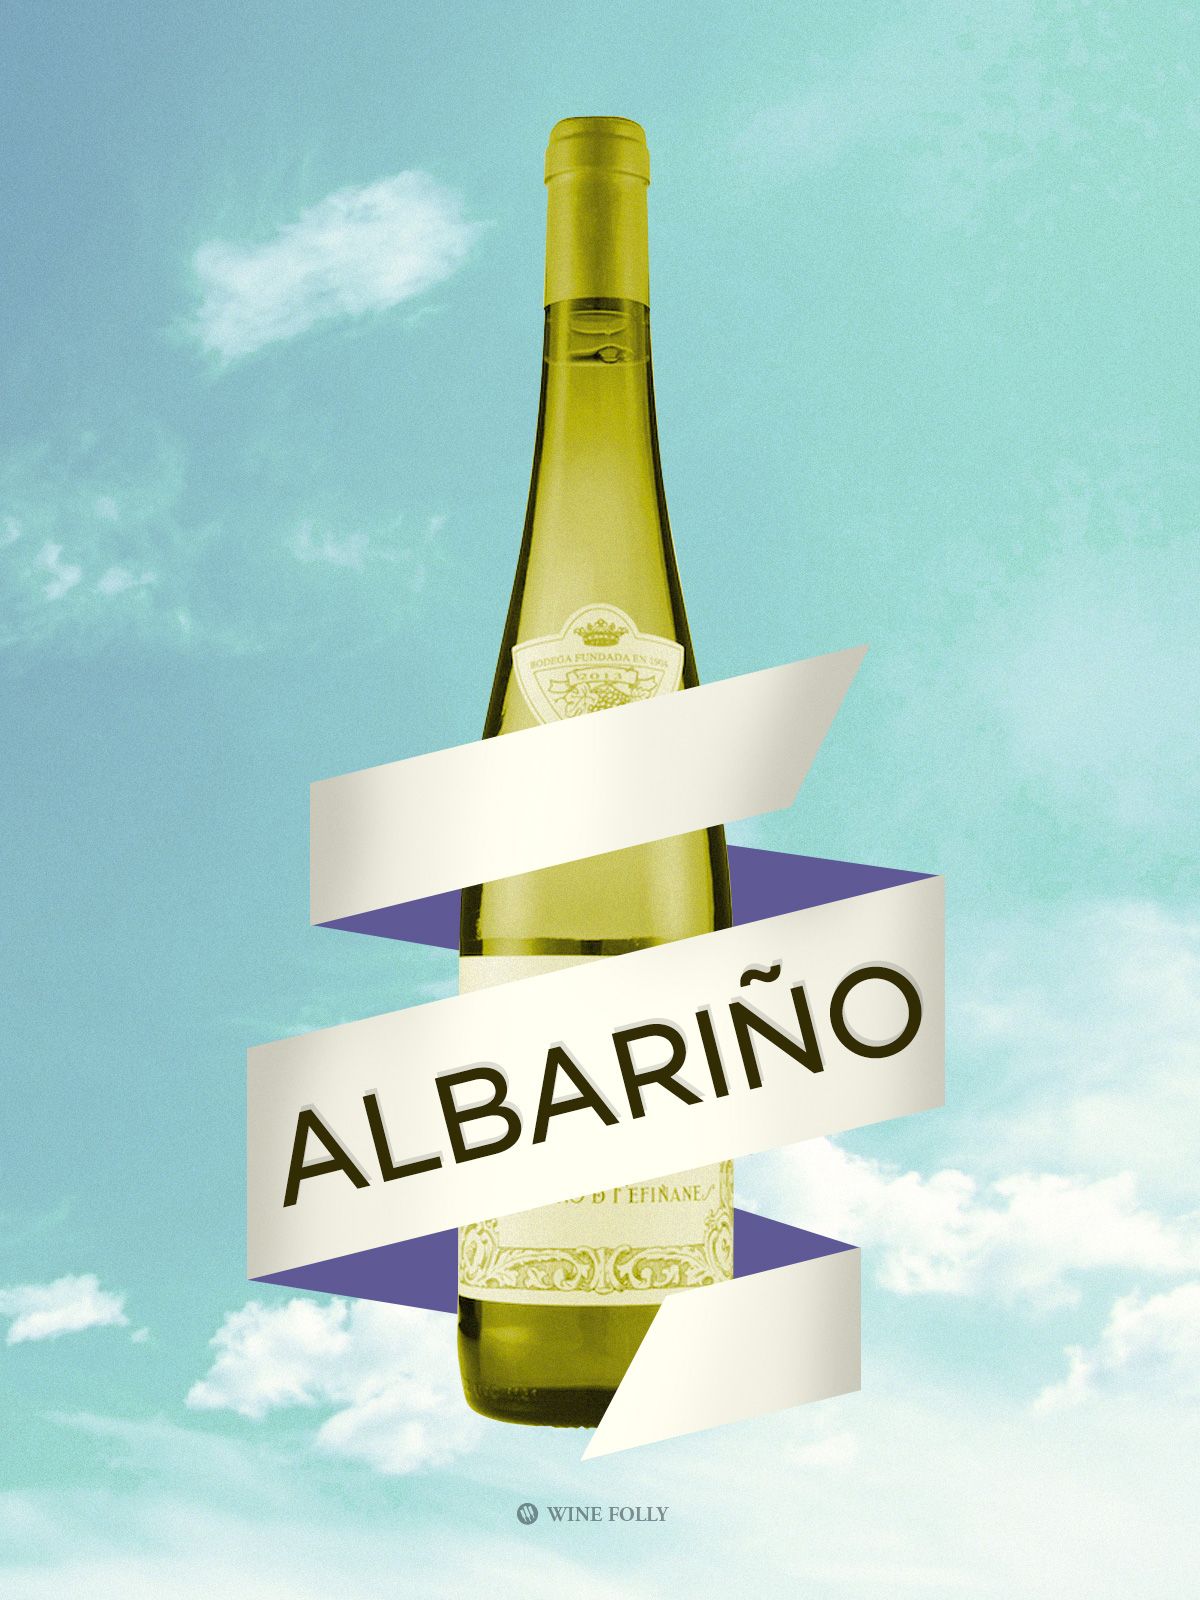 Víno Albariño zo Španielska, ilustrácia od Wine Folly